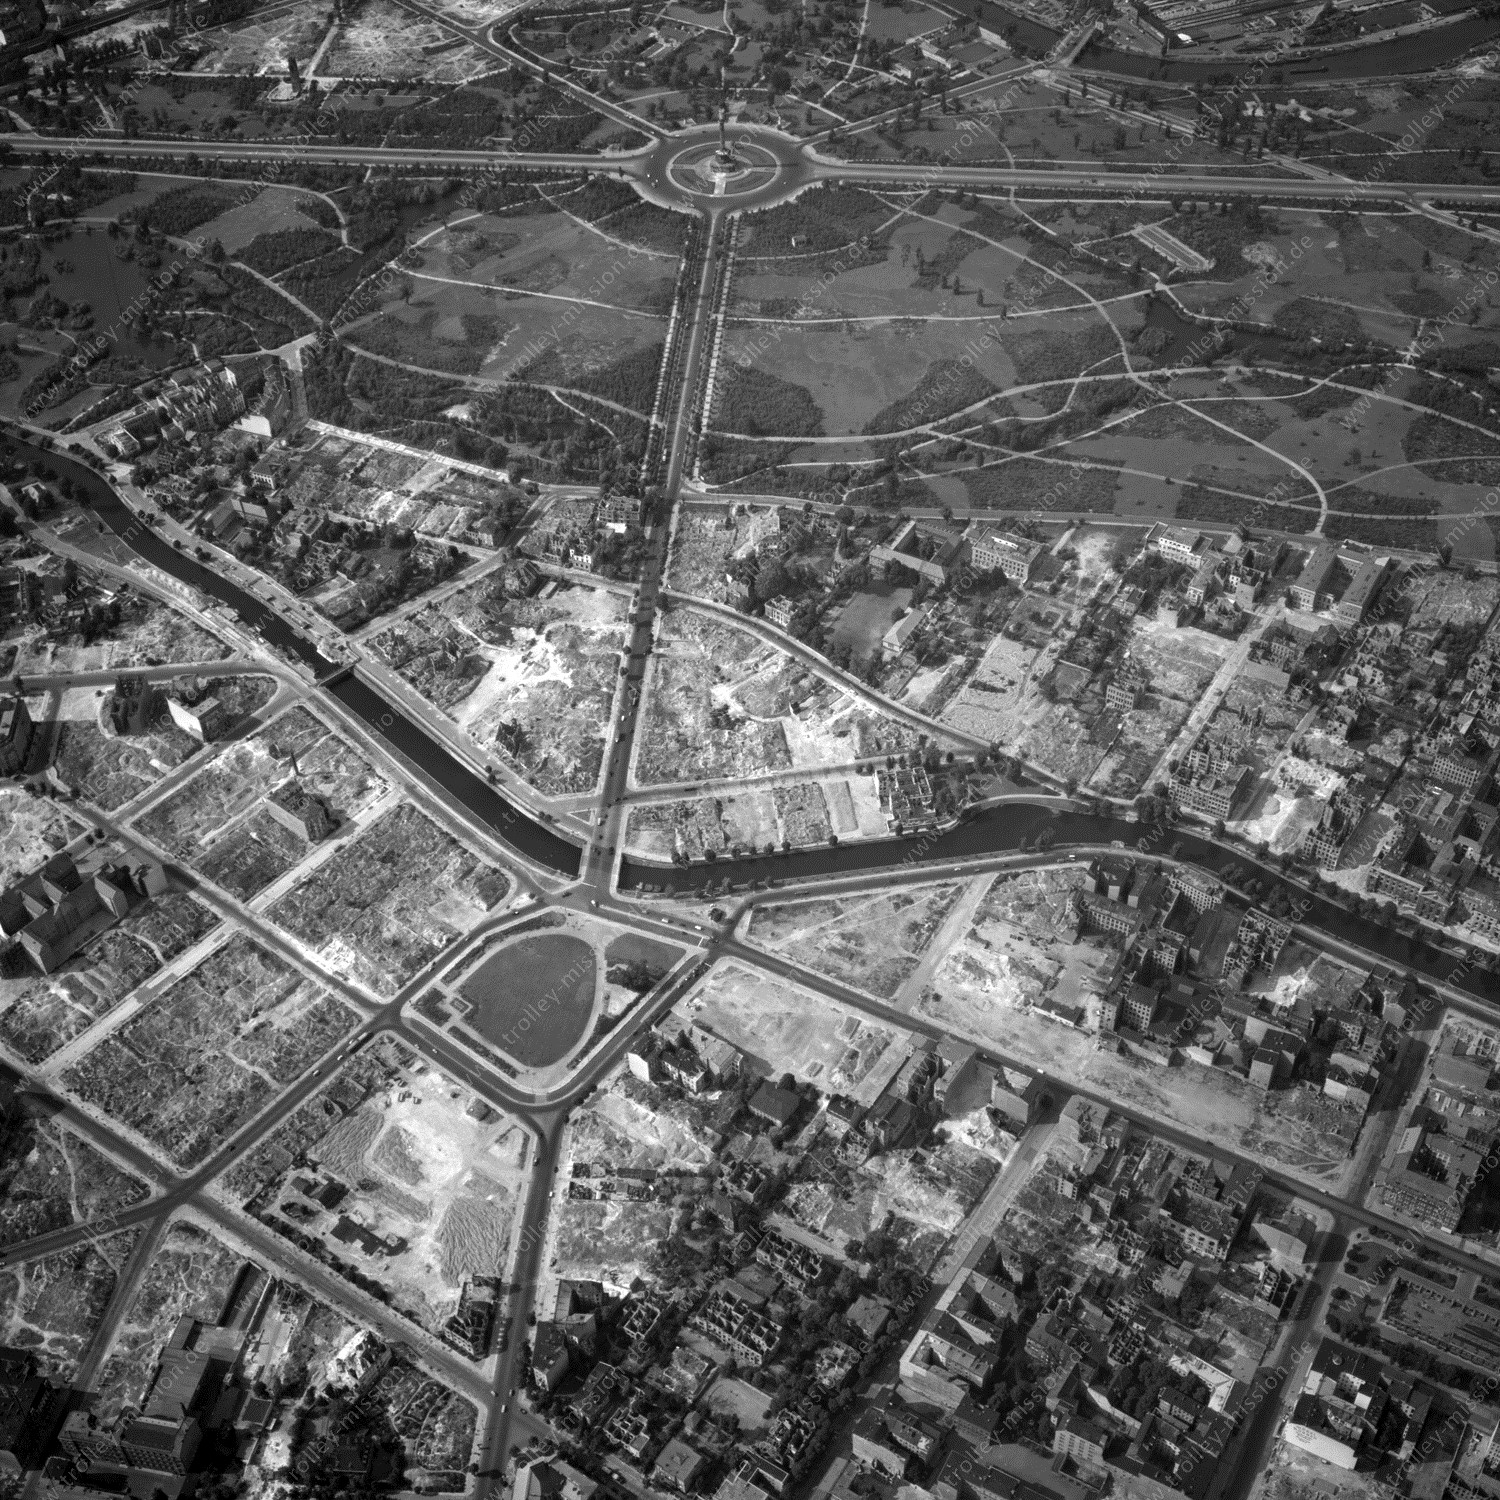 Alte Fotos und Luftbilder von Berlin - Luftbildaufnahme Nr. 02 - Historische Luftaufnahmen von West-Berlin aus dem Jahr 1954 - Flugstrecke Yankee